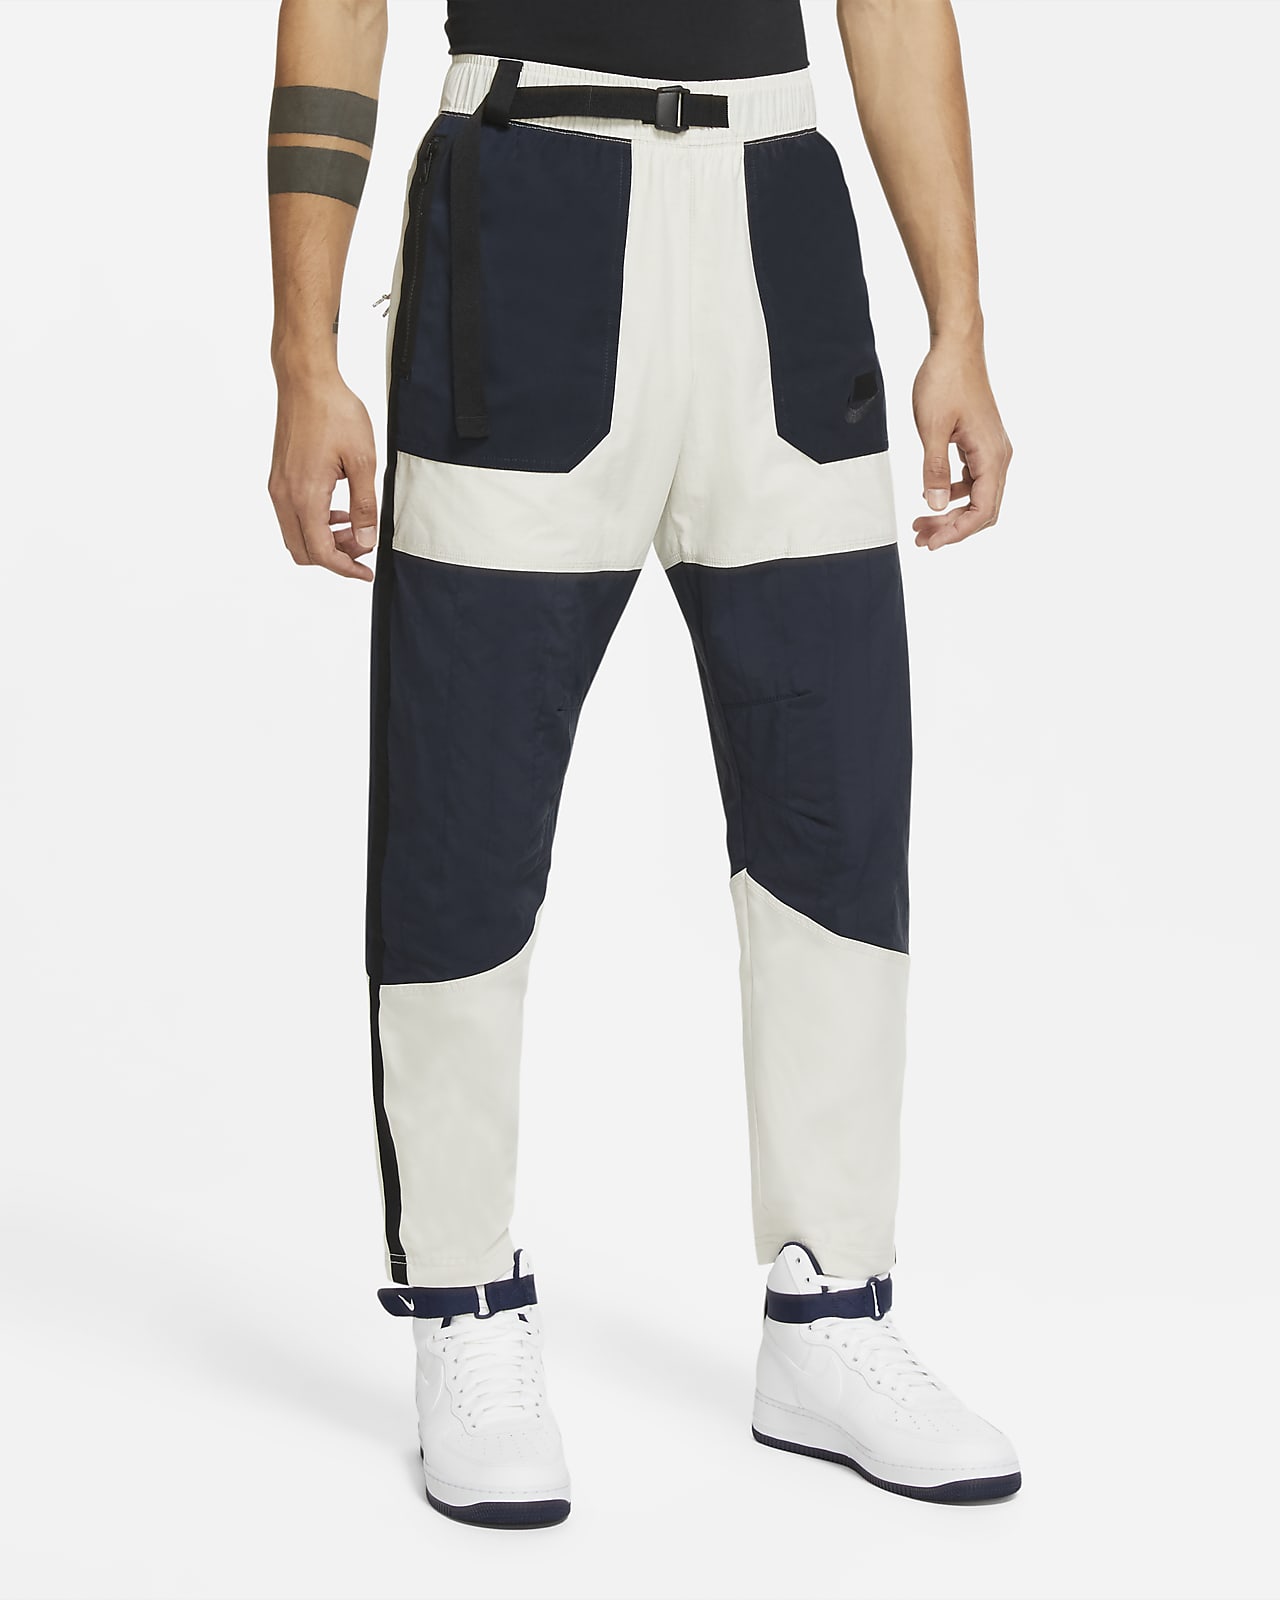 Pantalones tejidos para hombre Nike Sportswear NSW